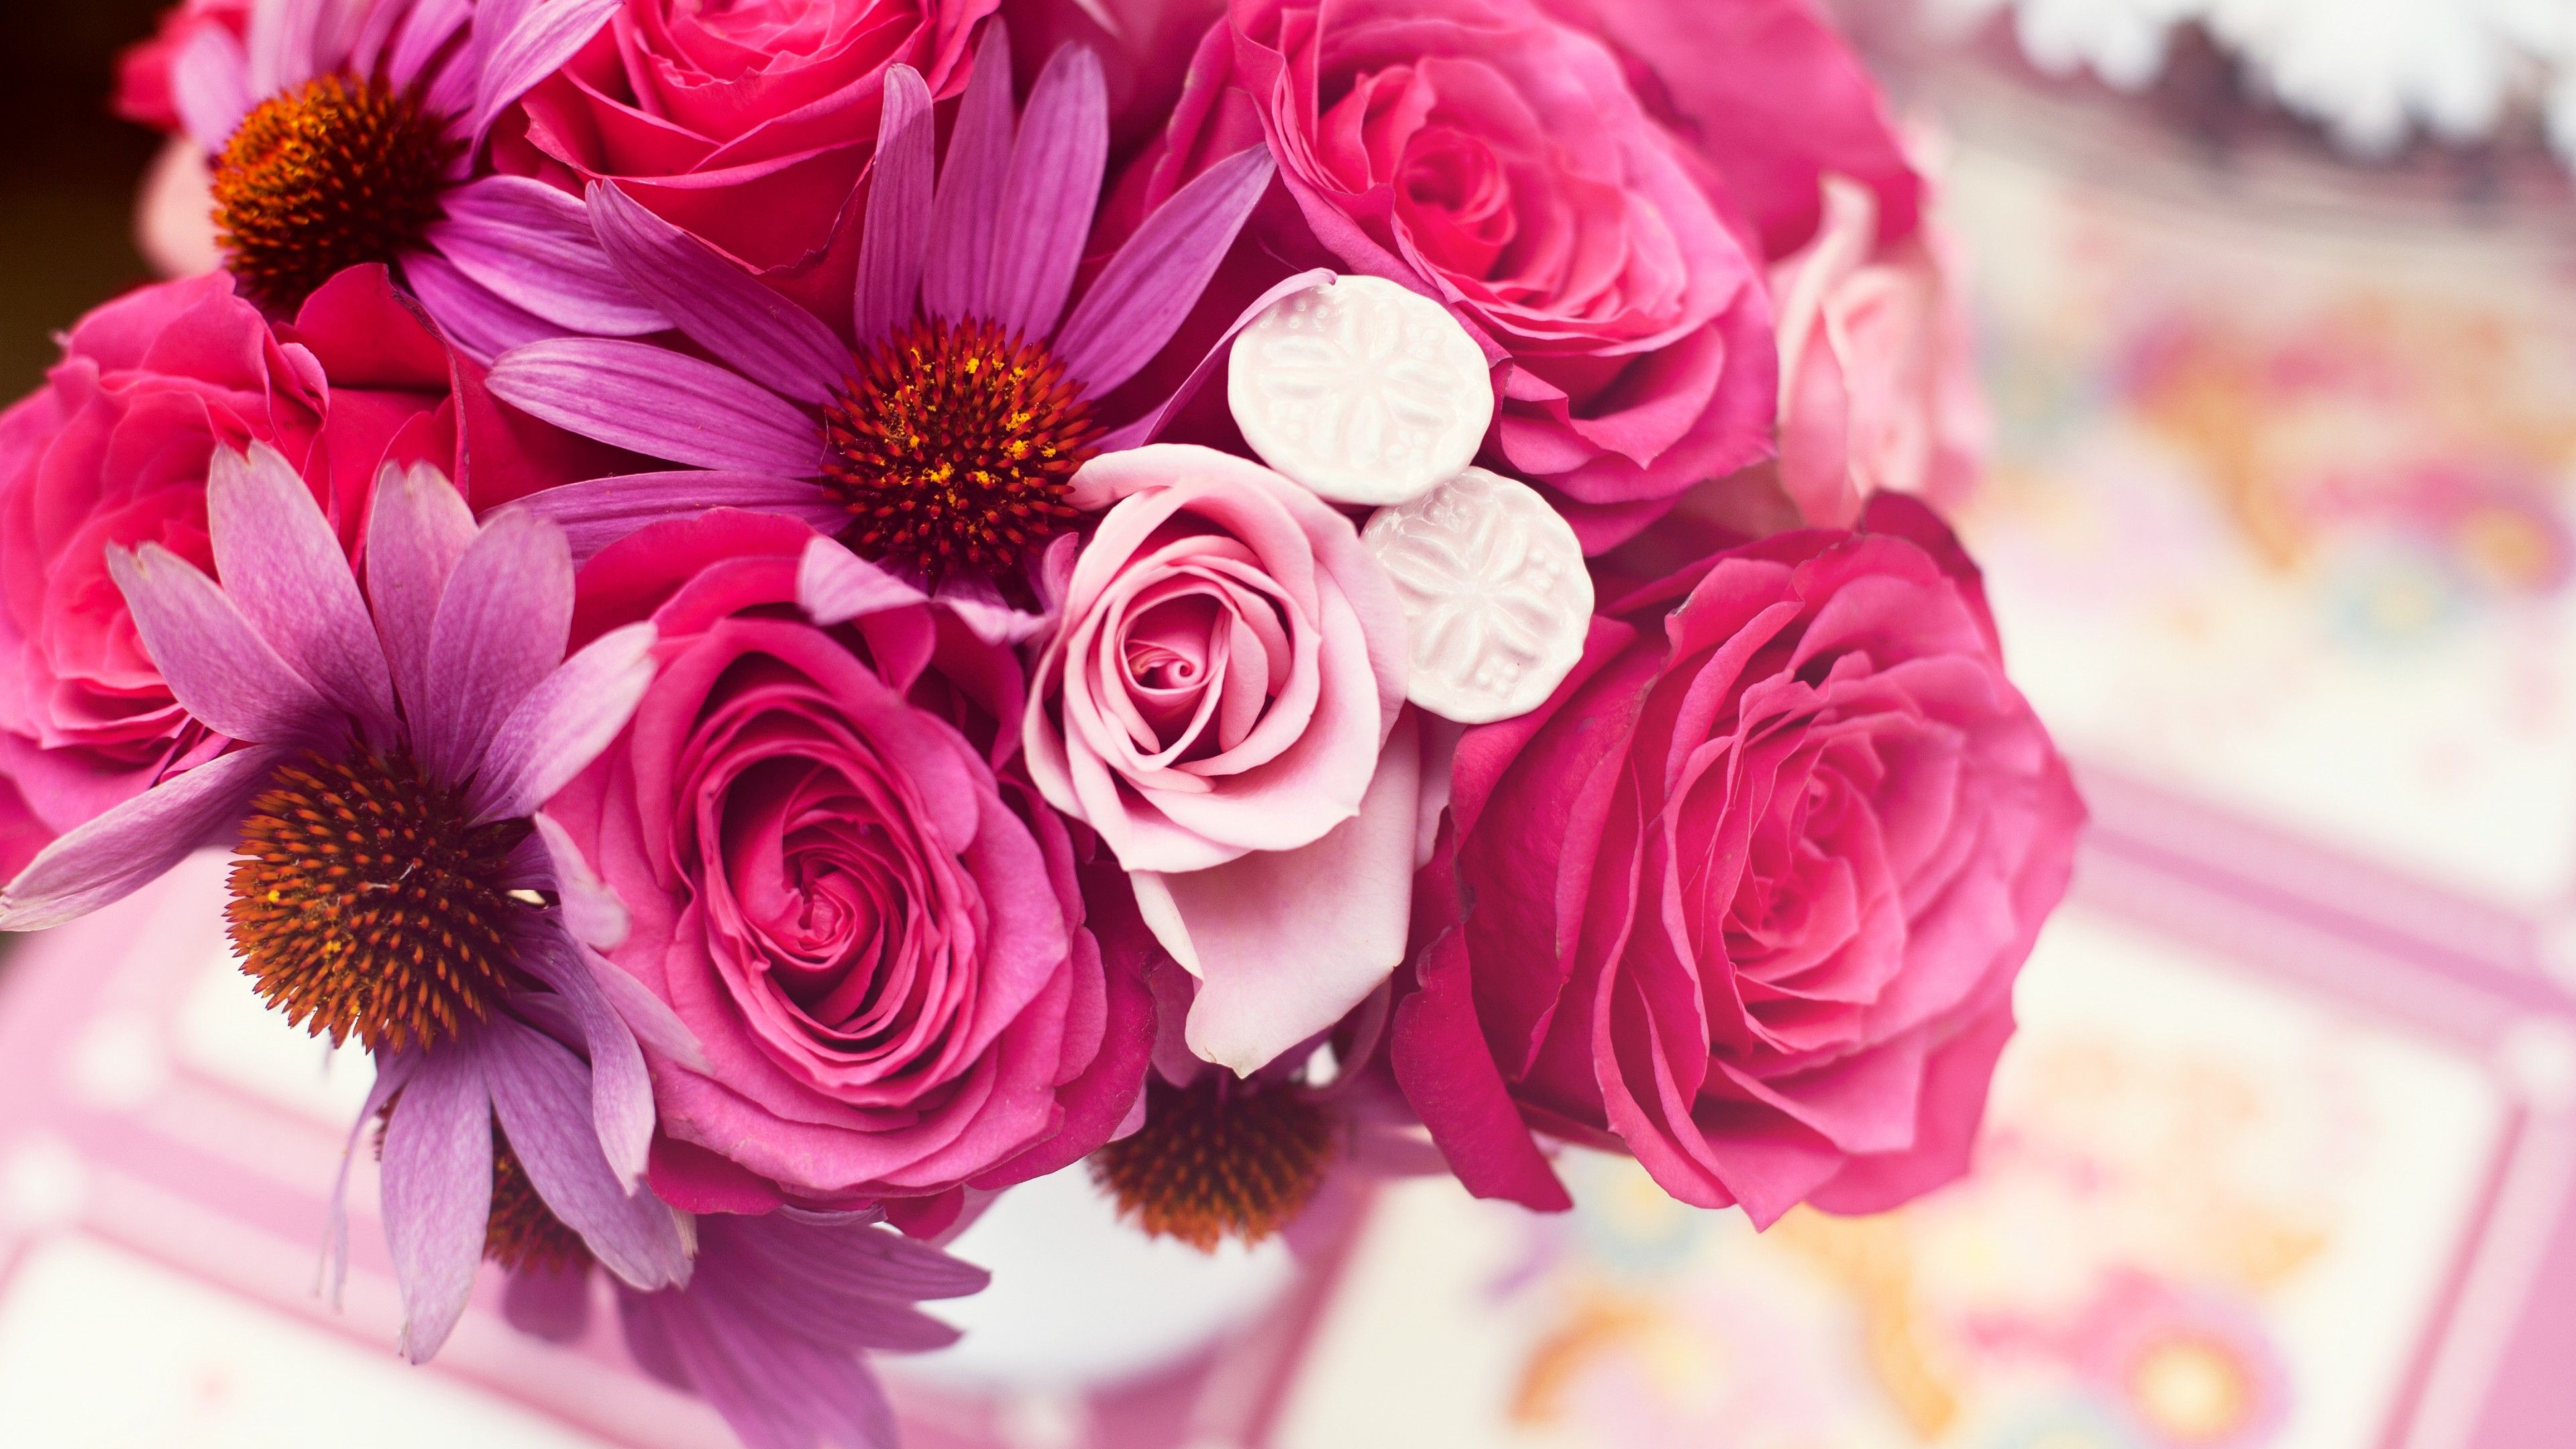 Wallpaper Garden roses, 4k, HD wallpaper, Flower bouquet, pink